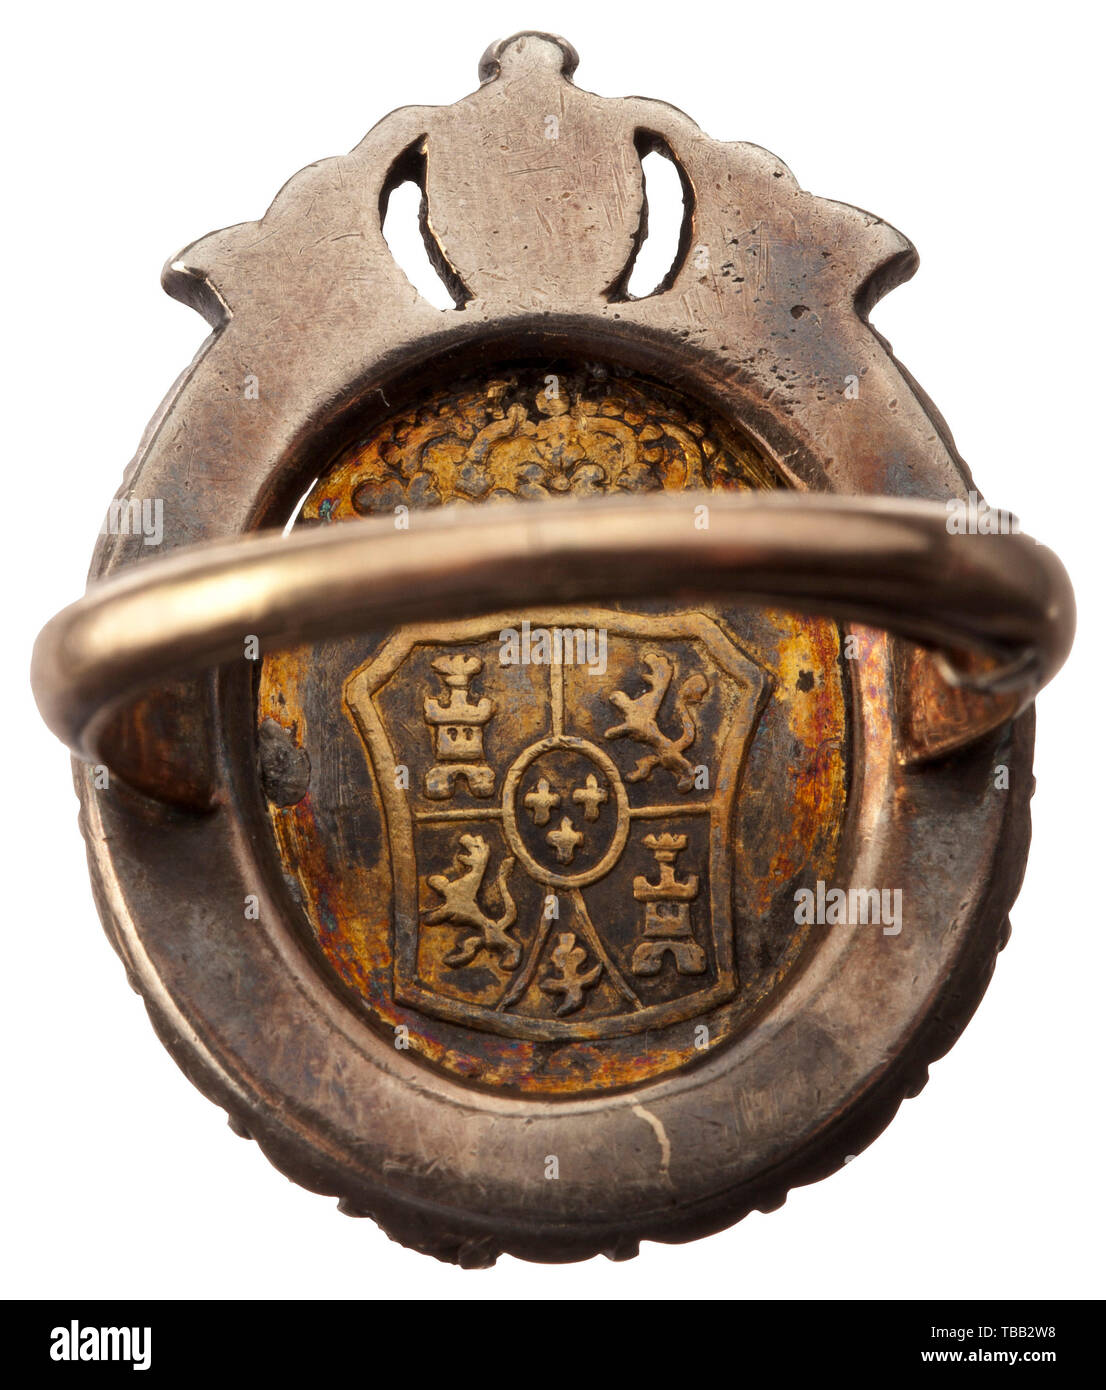 Le Roi Charles III d'Espagne - un portrait du 18ème siècle, Bague argent, or, diamants taille ancienne et de l'émail. Situé dans une couronne de diamants d'argent, couronné (16 rubis, deux petits manquant) l'ovale portrait du roi en or émaillé noir sur la masse. Le royal espagnol armoiries au dos. Bague en or et argent de la clavette. Circa médaillon 19 x 25 mm, diamètre de l'anneau 17 mm, poids 8 g. Avec des signes de vieillissement et d'usure, de la qualité de l'exécution. Additional-Rights historique, historique,-Clearance-Info-Not-Available Banque D'Images